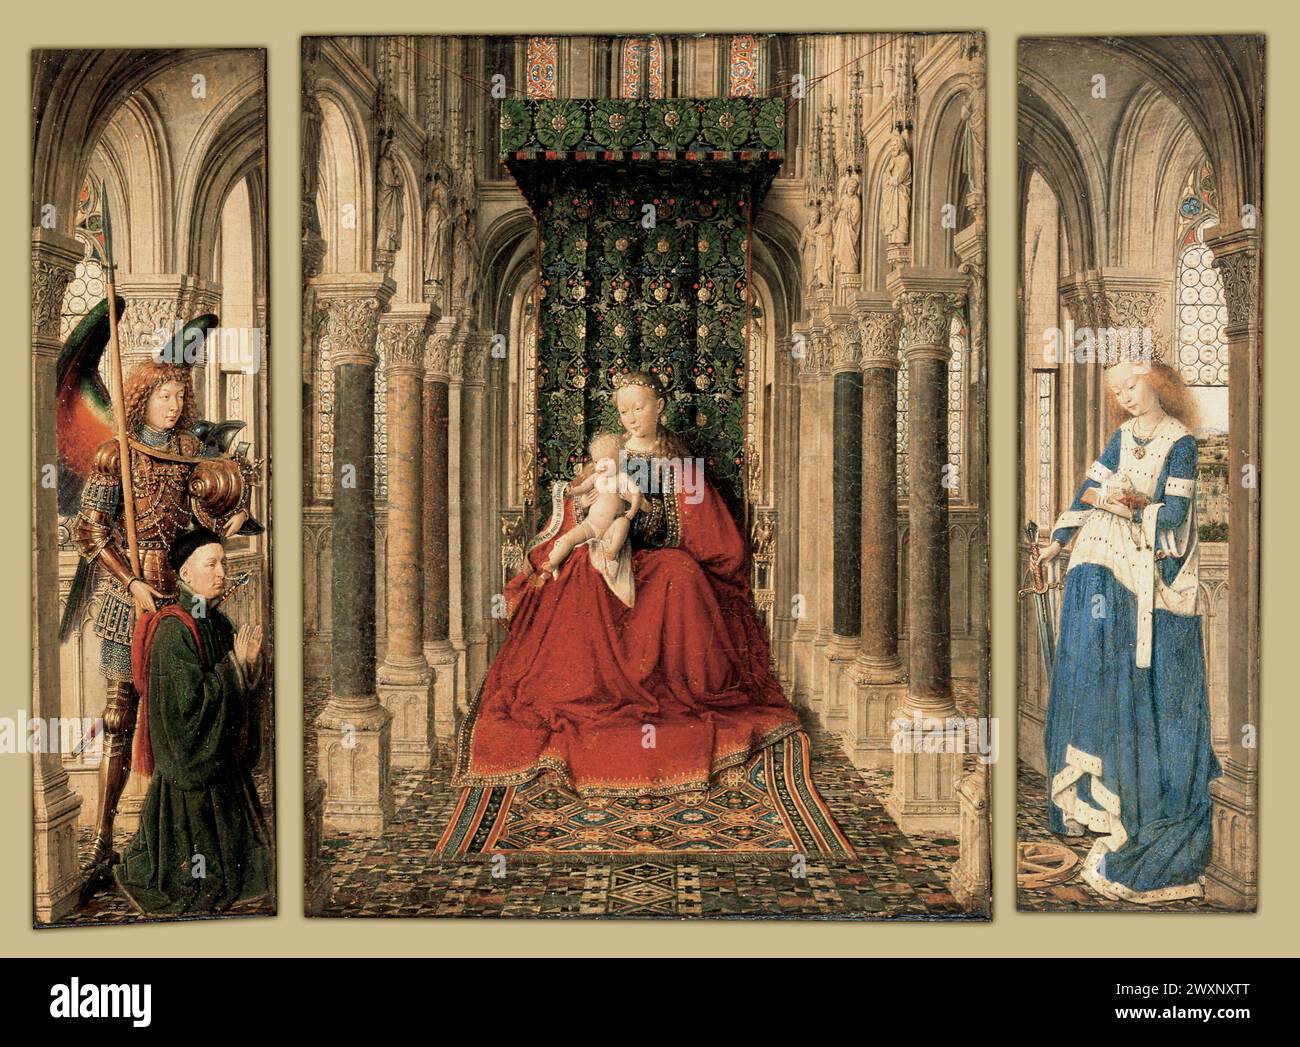 Triptyque de Dresde. Huile sur panneau de chêne, 1437. Gemäldegalerie Alte Meister, Dresde Jan van Eyck Banque D'Images